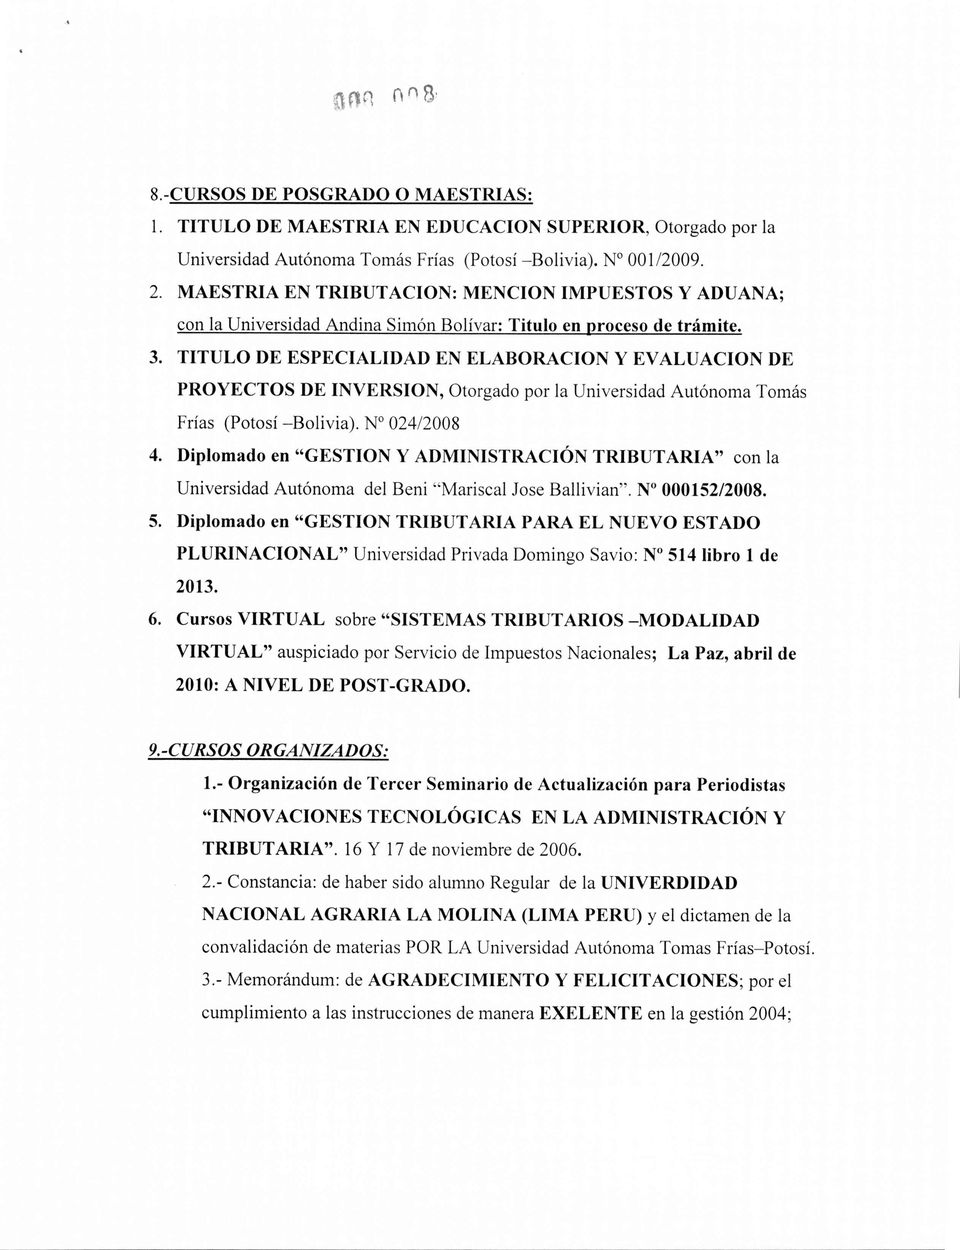 TITULO DE ESPECIALIDAD EN ELABORACION y EV ALUACION DE PROYECTOS DE INVERSION, Otorgado por la Universidad Autónoma Tomás Frías (Potosí -Bolivia). N 024/2008 4.